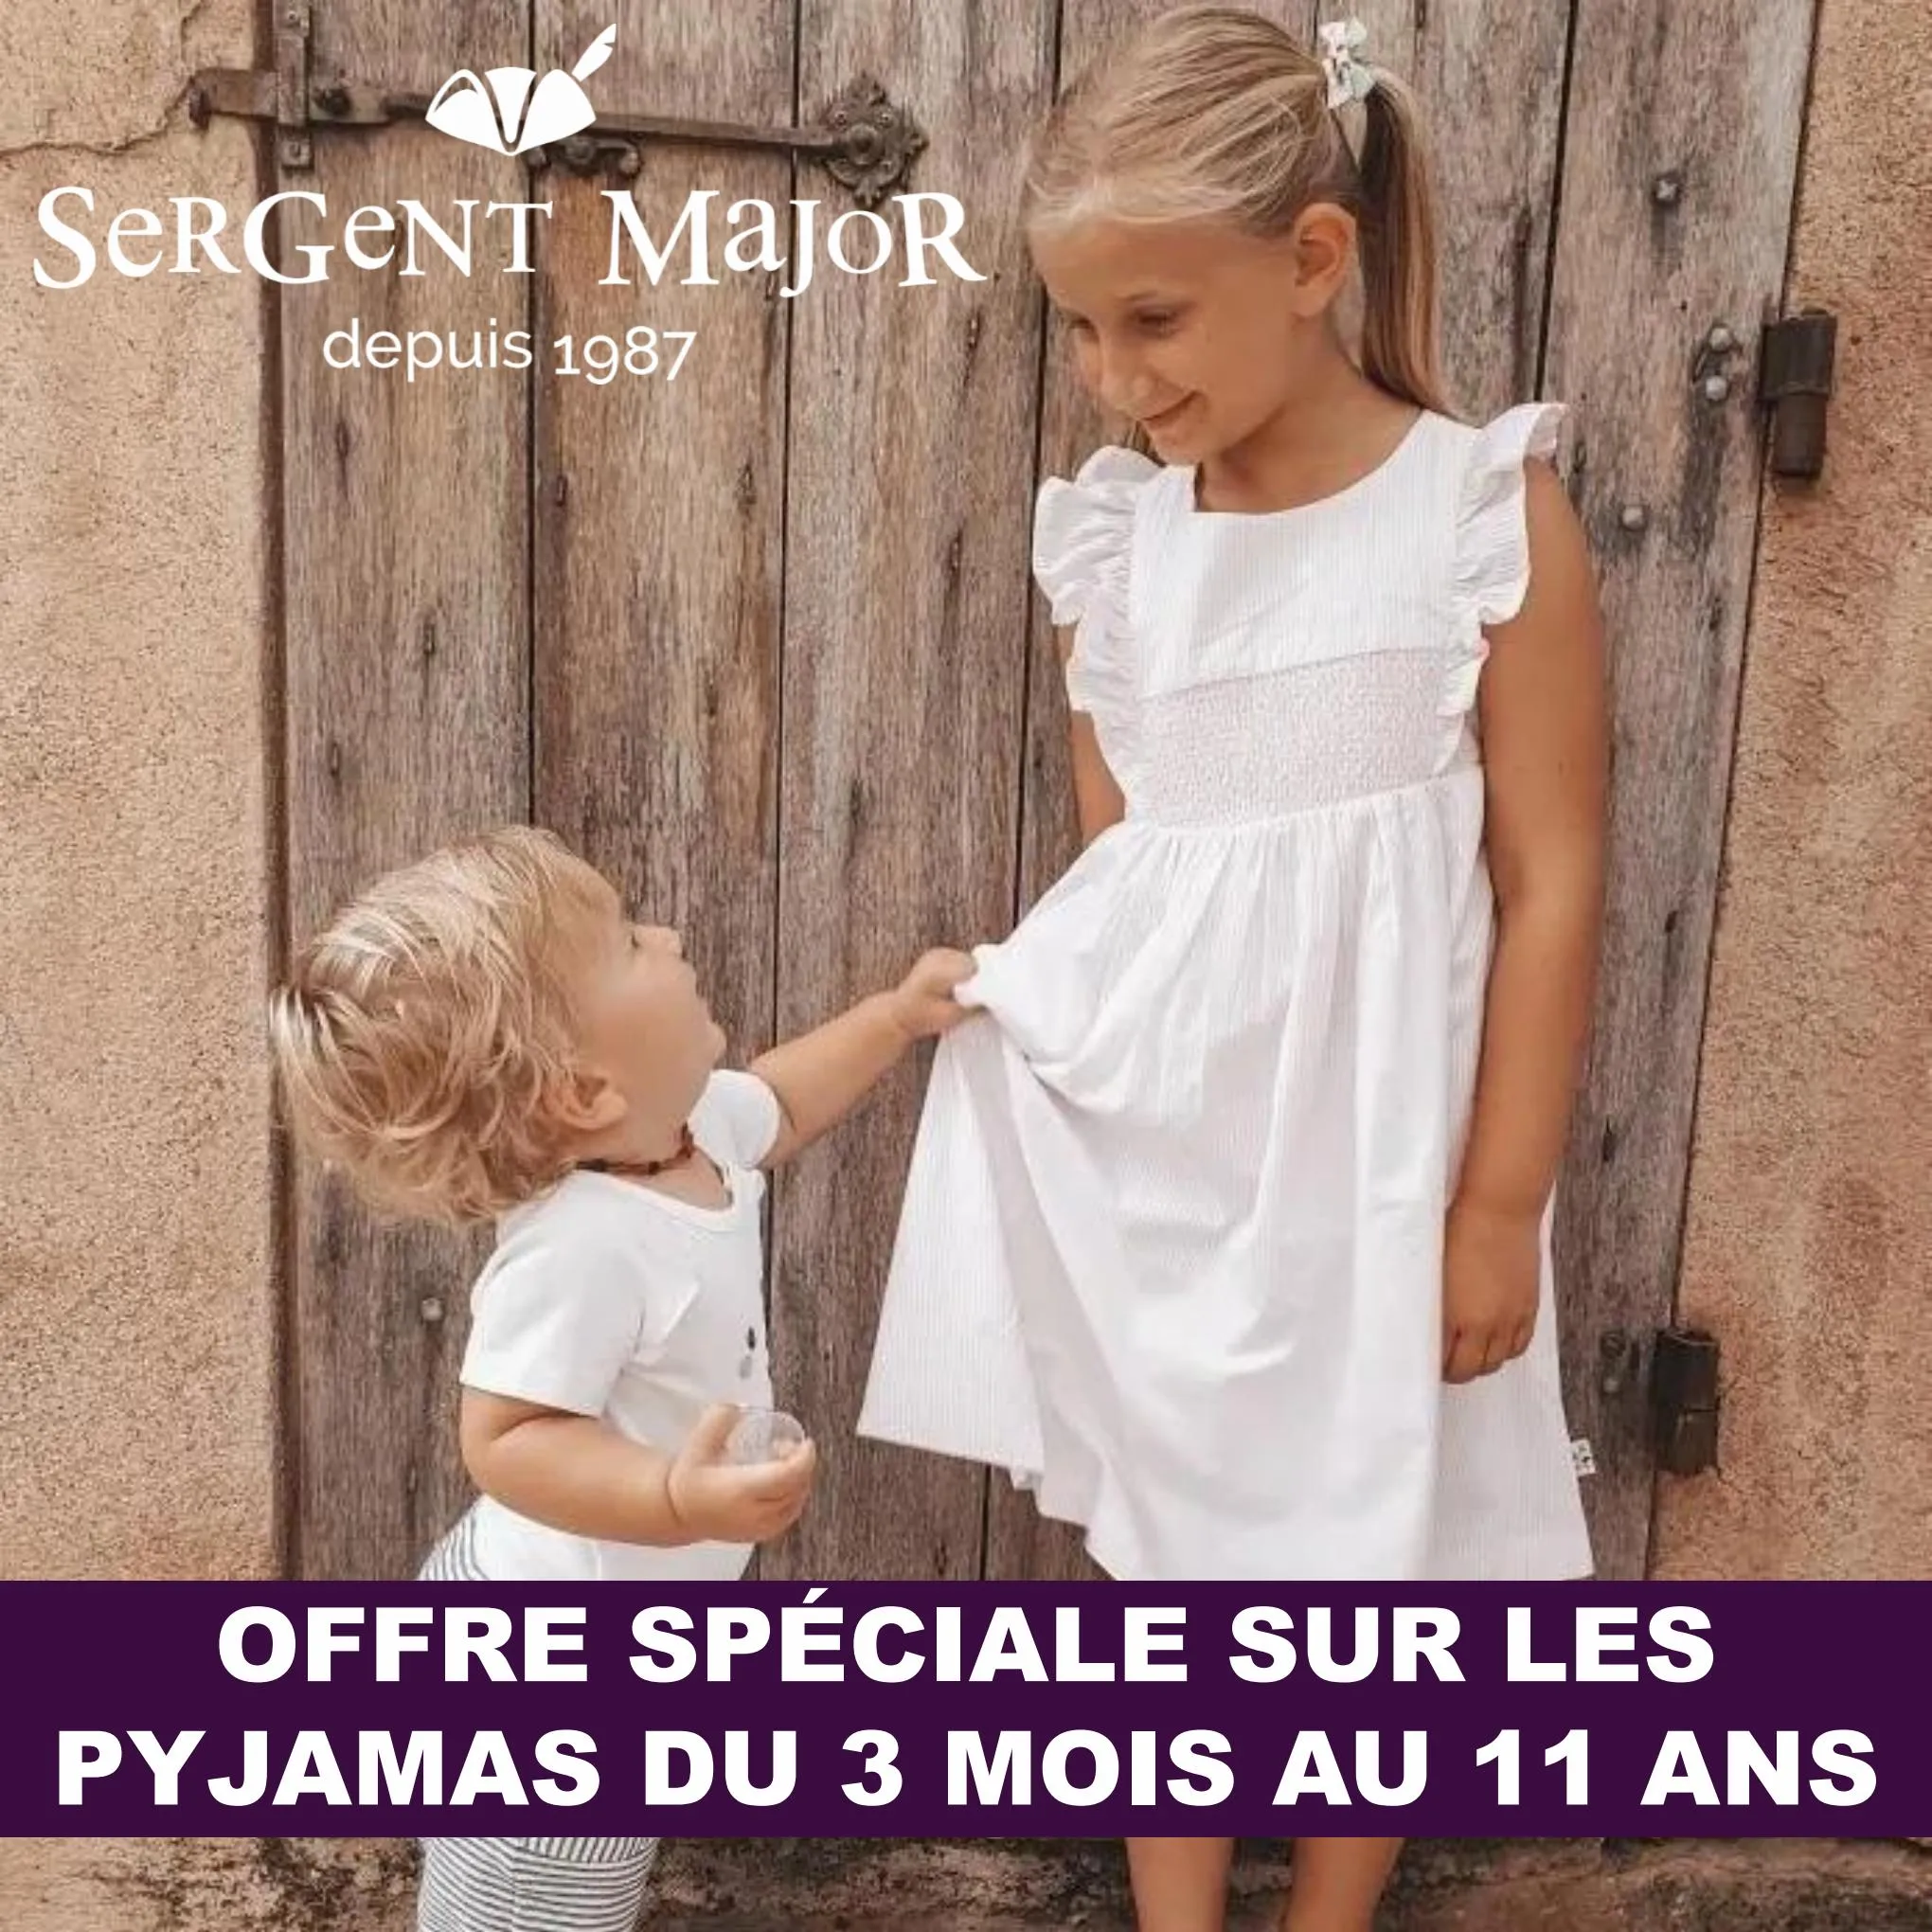 Catalogue Offre spéciale sur les pyjamas du 3 mois au 11 ans, page 00001